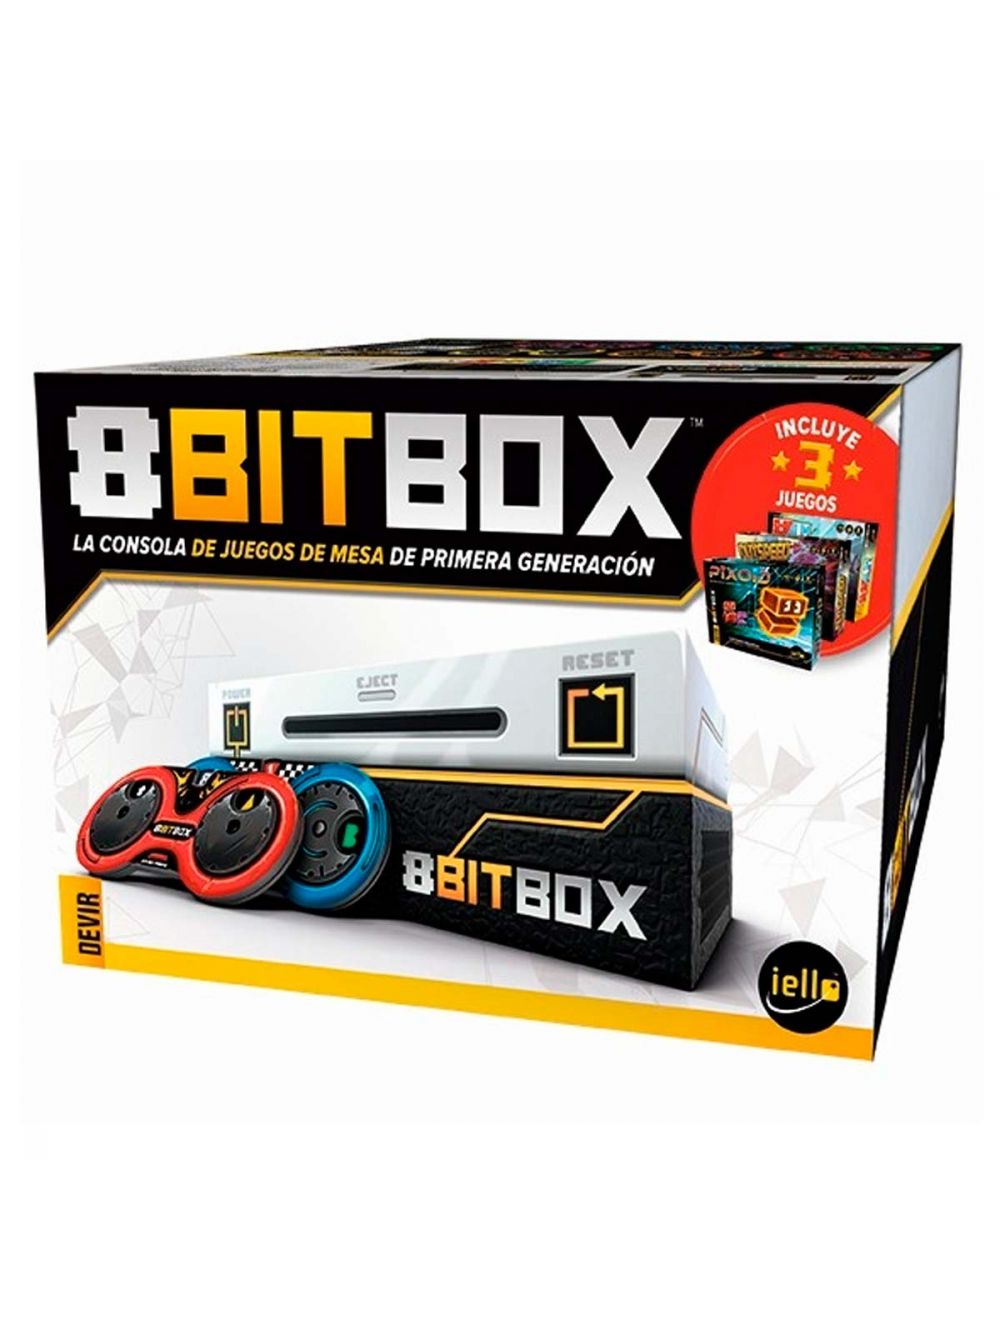 8-Bit Box